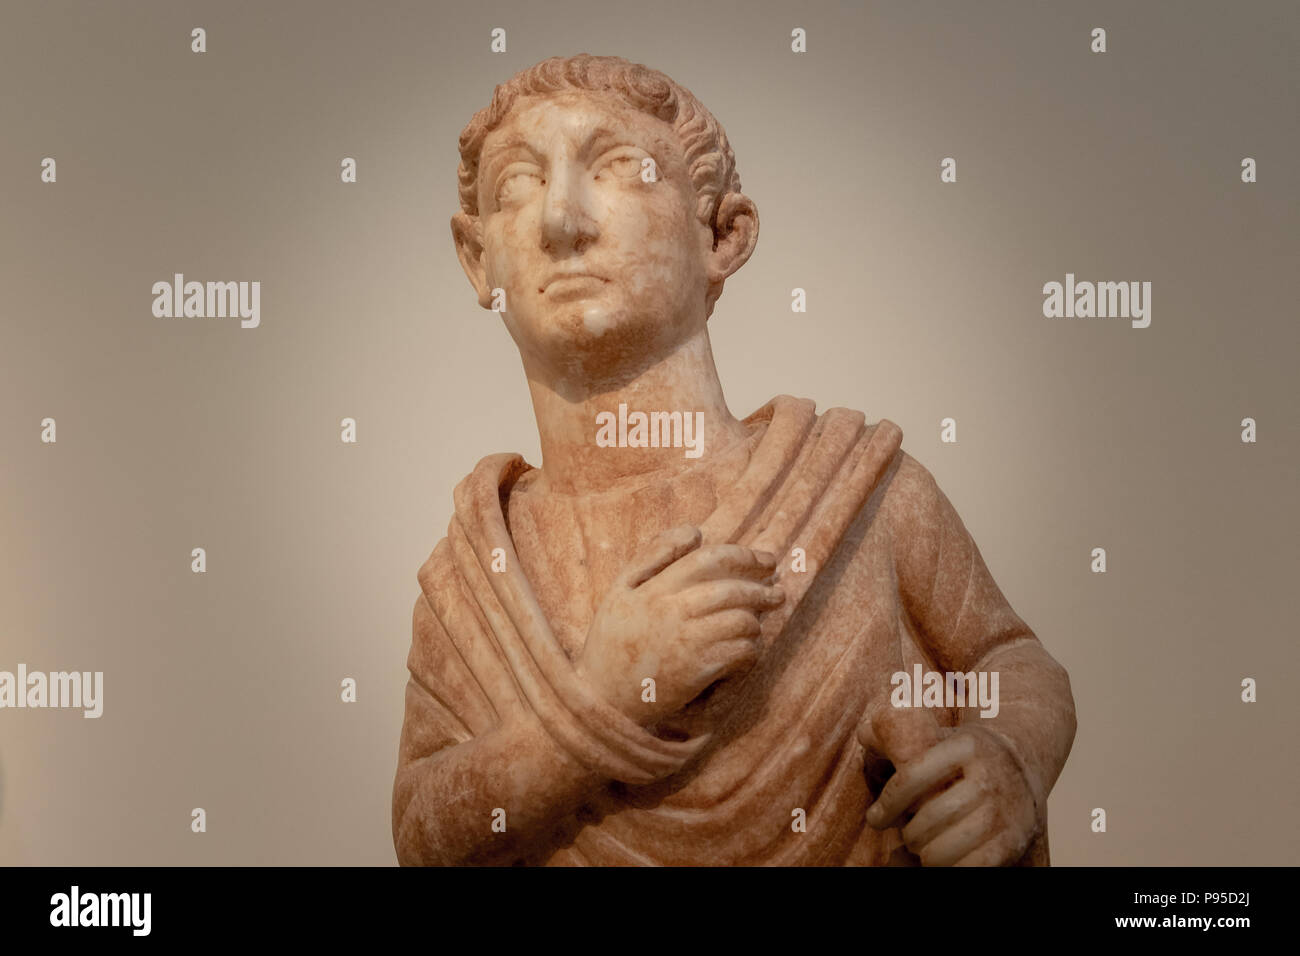 Ritratto maschile di un uomo con una rotellina di scorrimento, Pentelic Marble, politico, burocrate o intellettuale, inizi del IV secolo d.c. Foto Stock